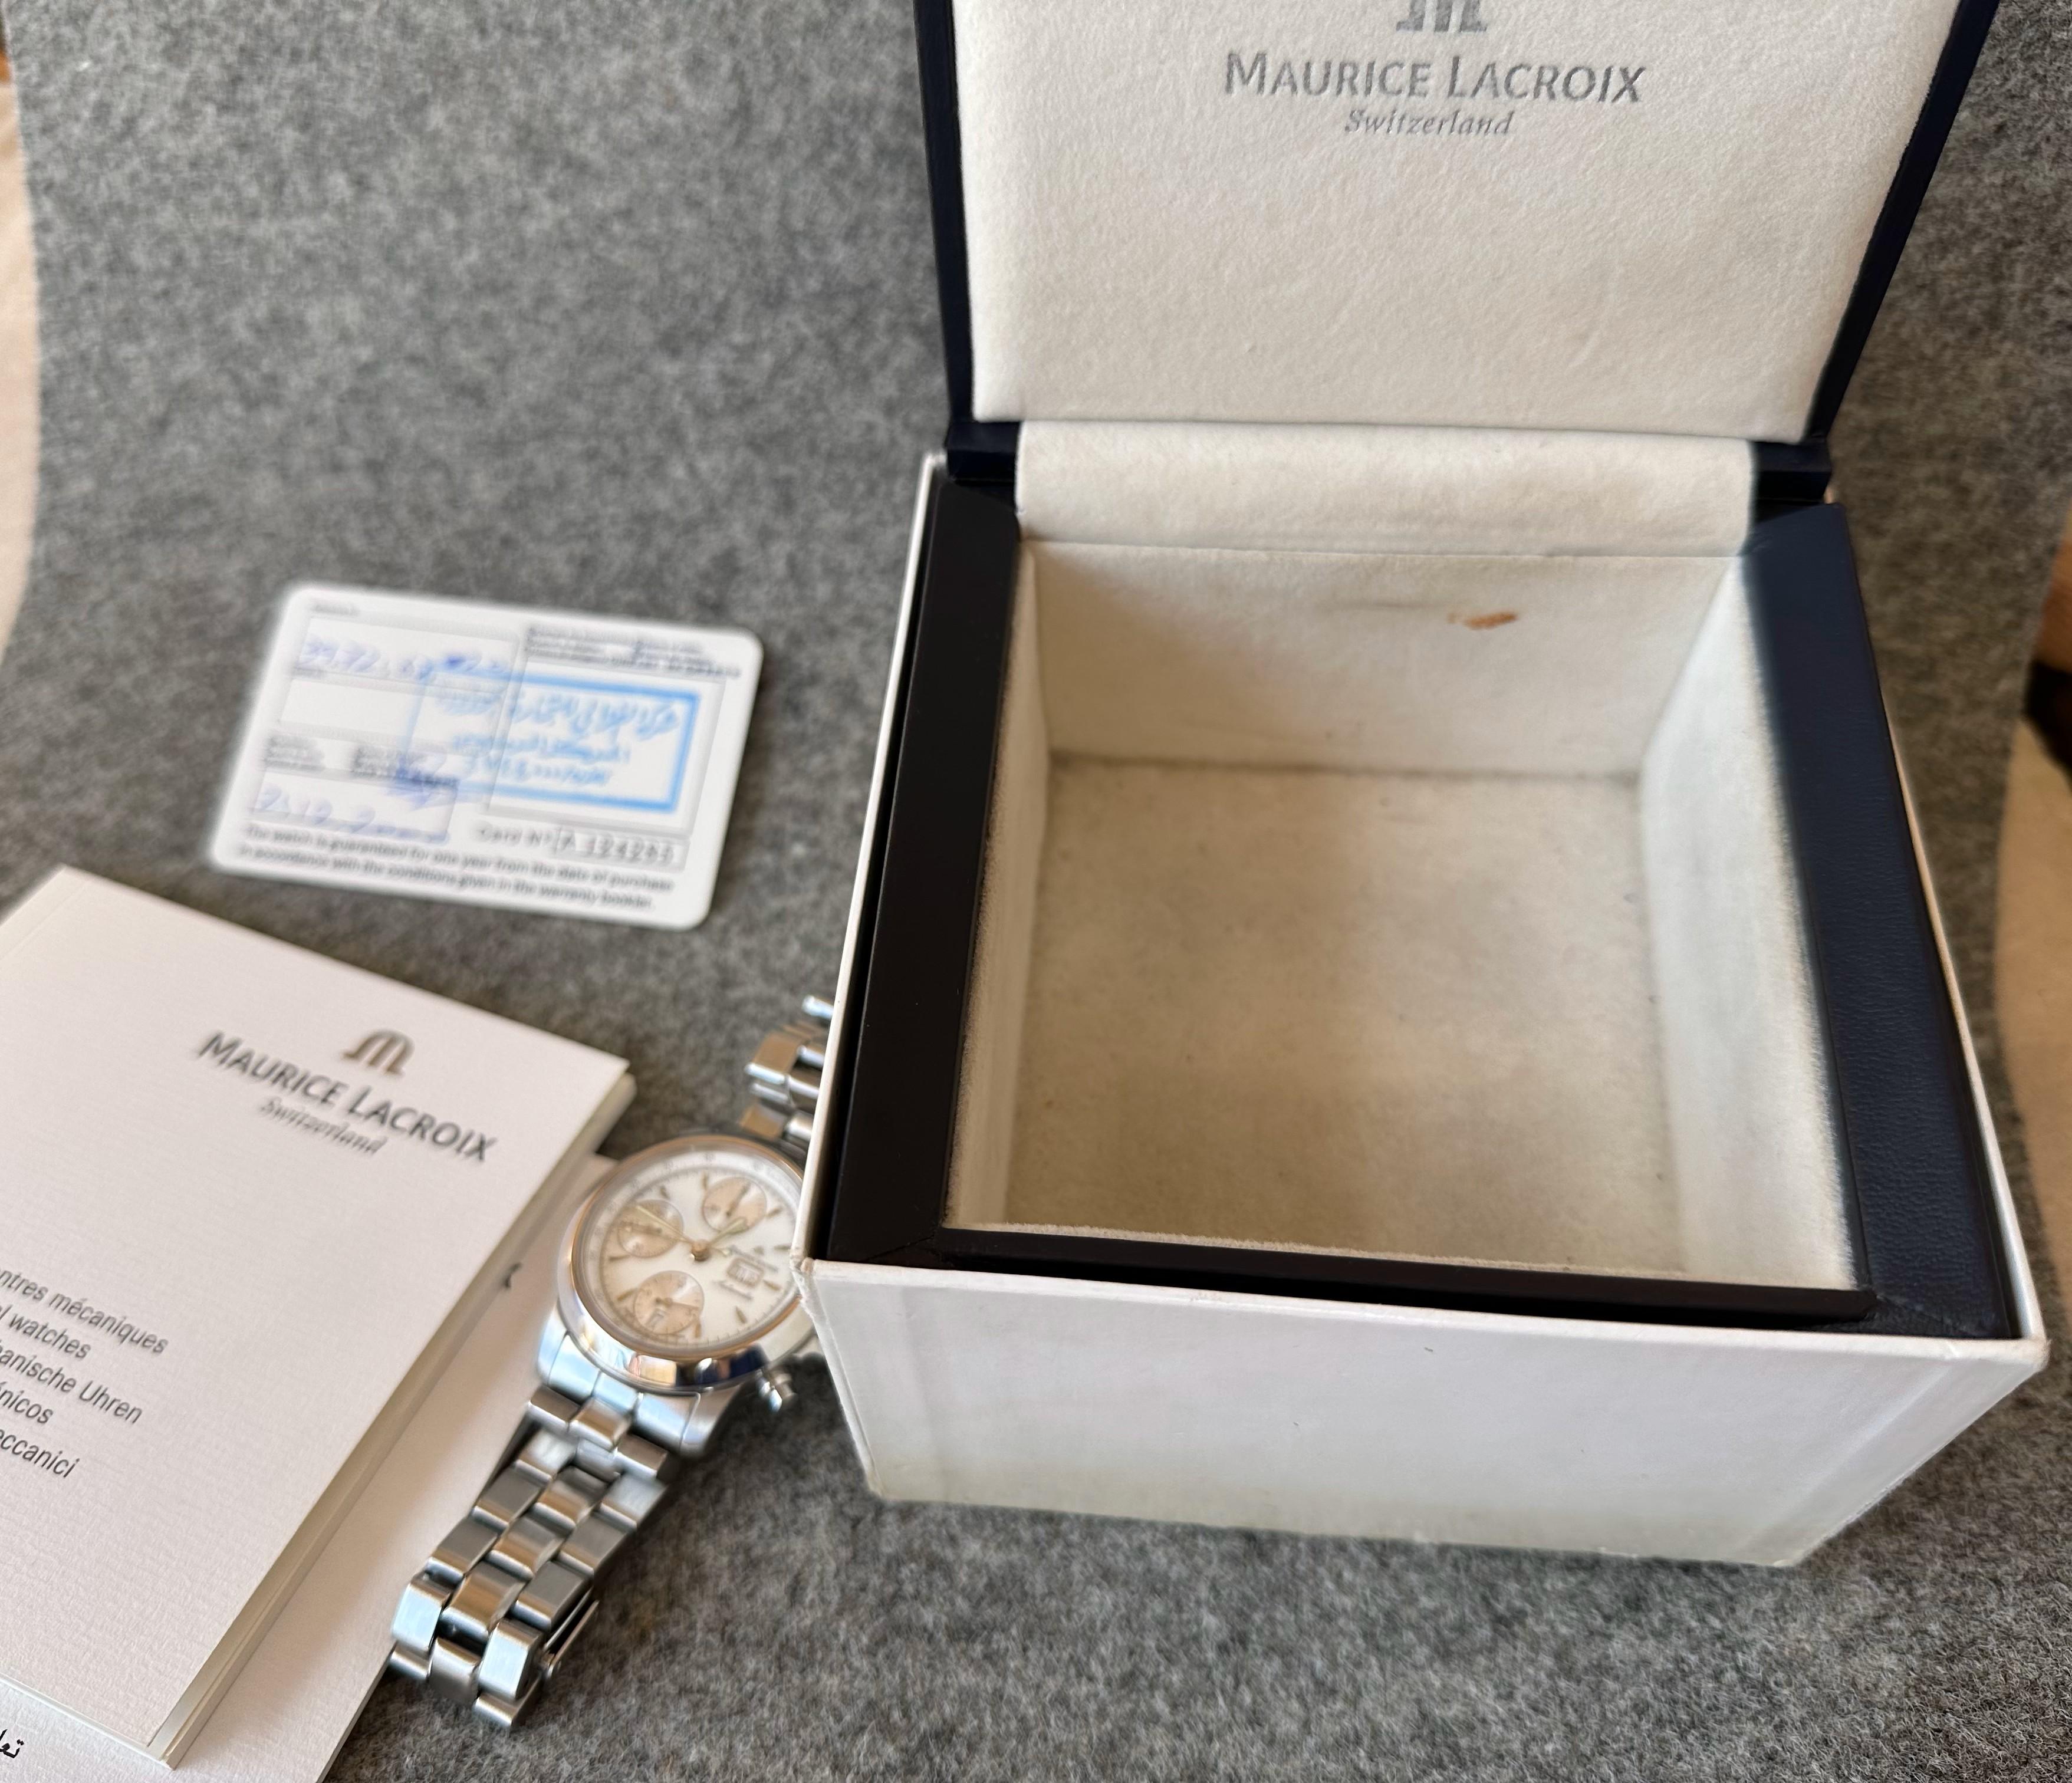 Maurice Lacroix Les Classiques Chronographe Automatic Chronograph 39721 Full Set For Sale 8